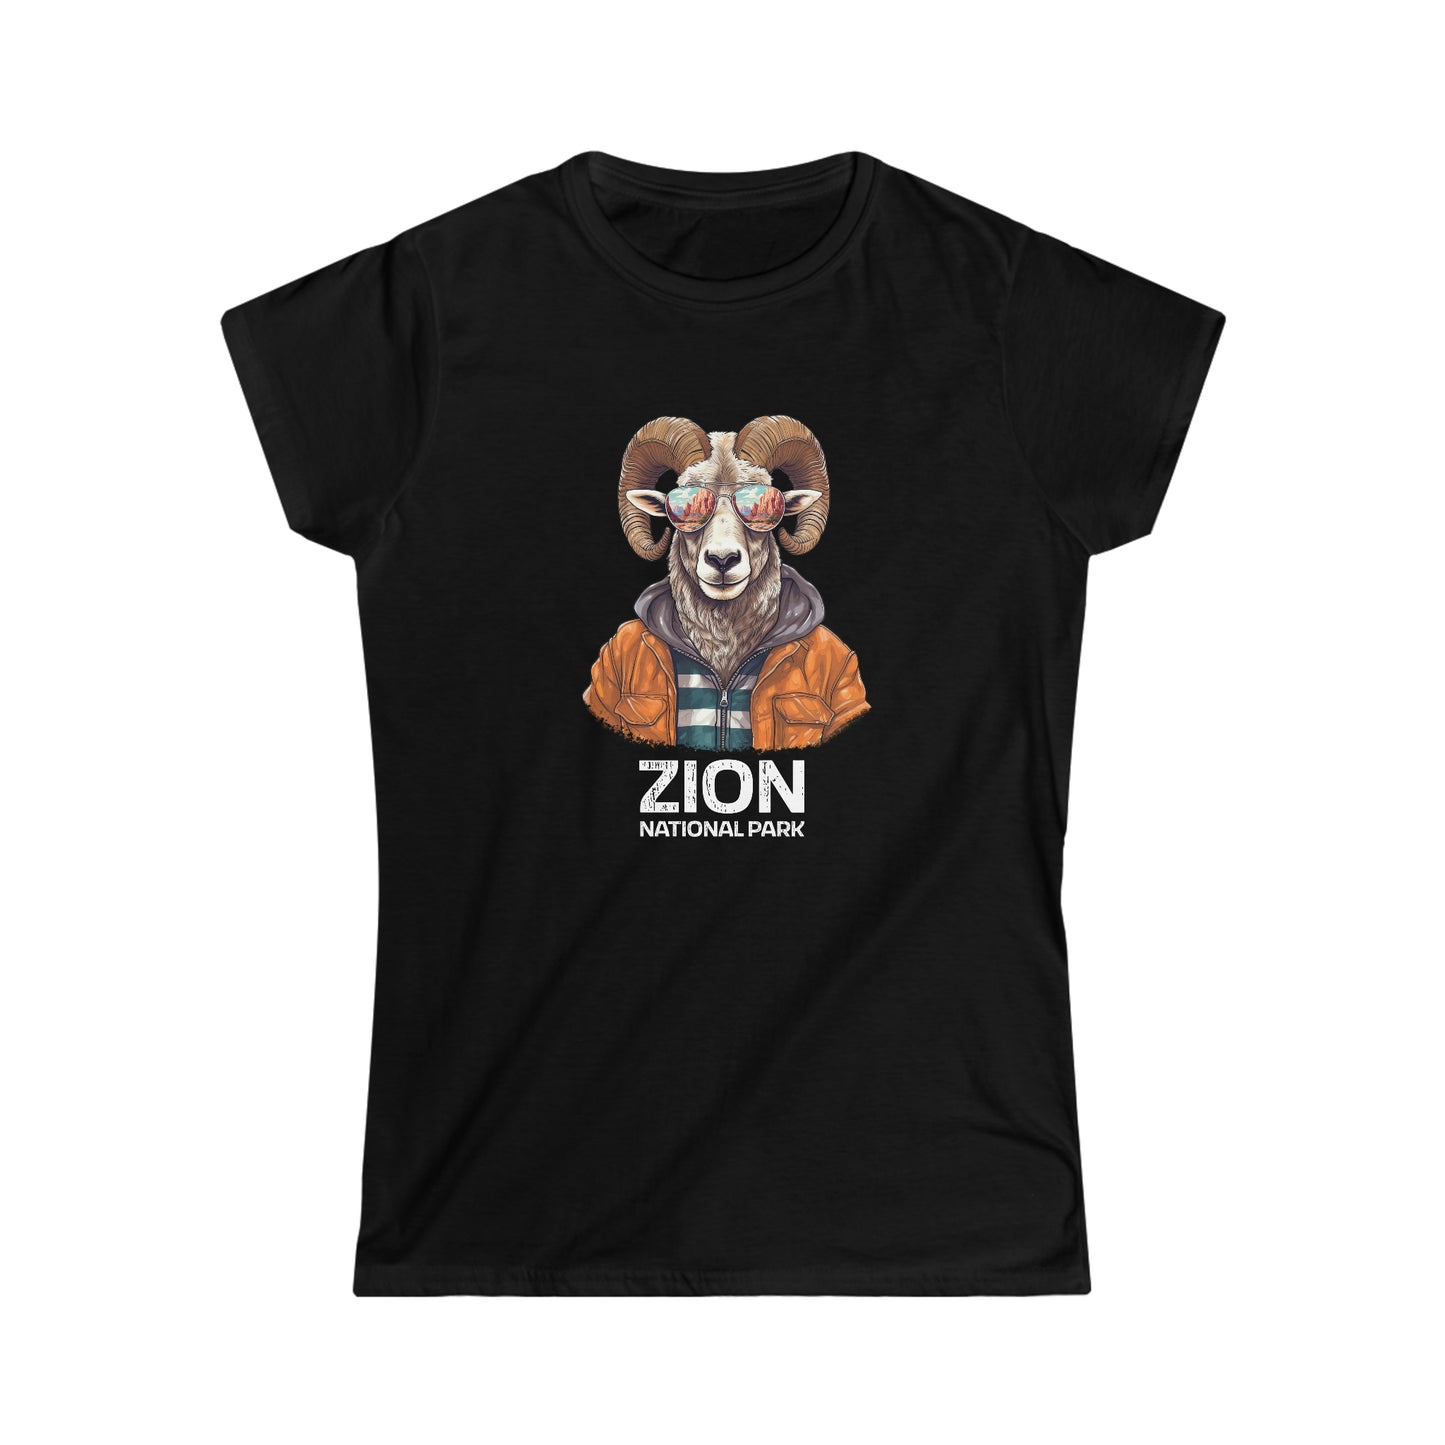 Zion National Park Women's T-Shirt - Cool Bighorn Sheep